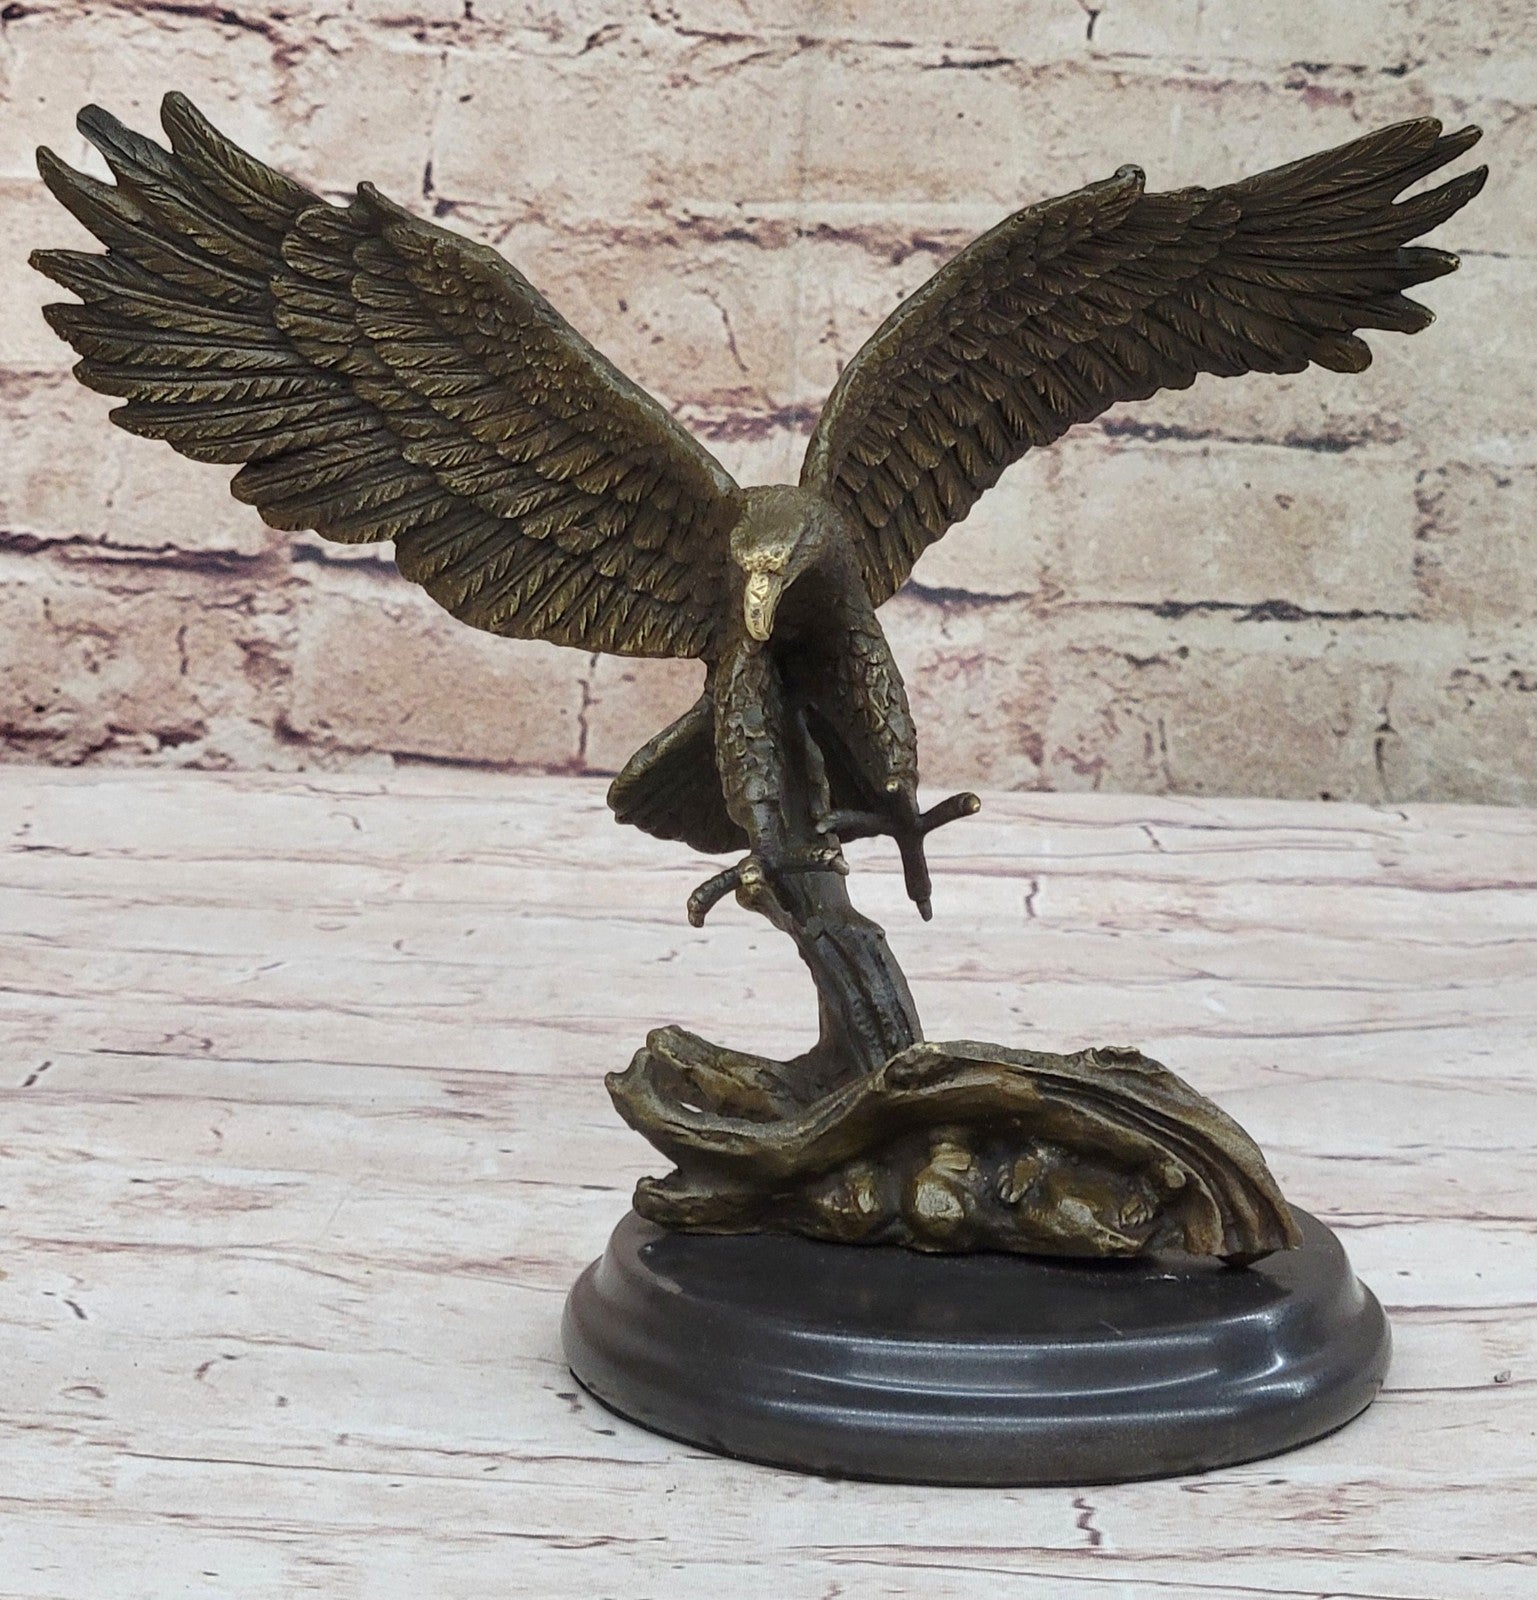 100% Real Bronze Statue AMERICAN BALD EAGLE Figure Sculpture Art Figurine SALE